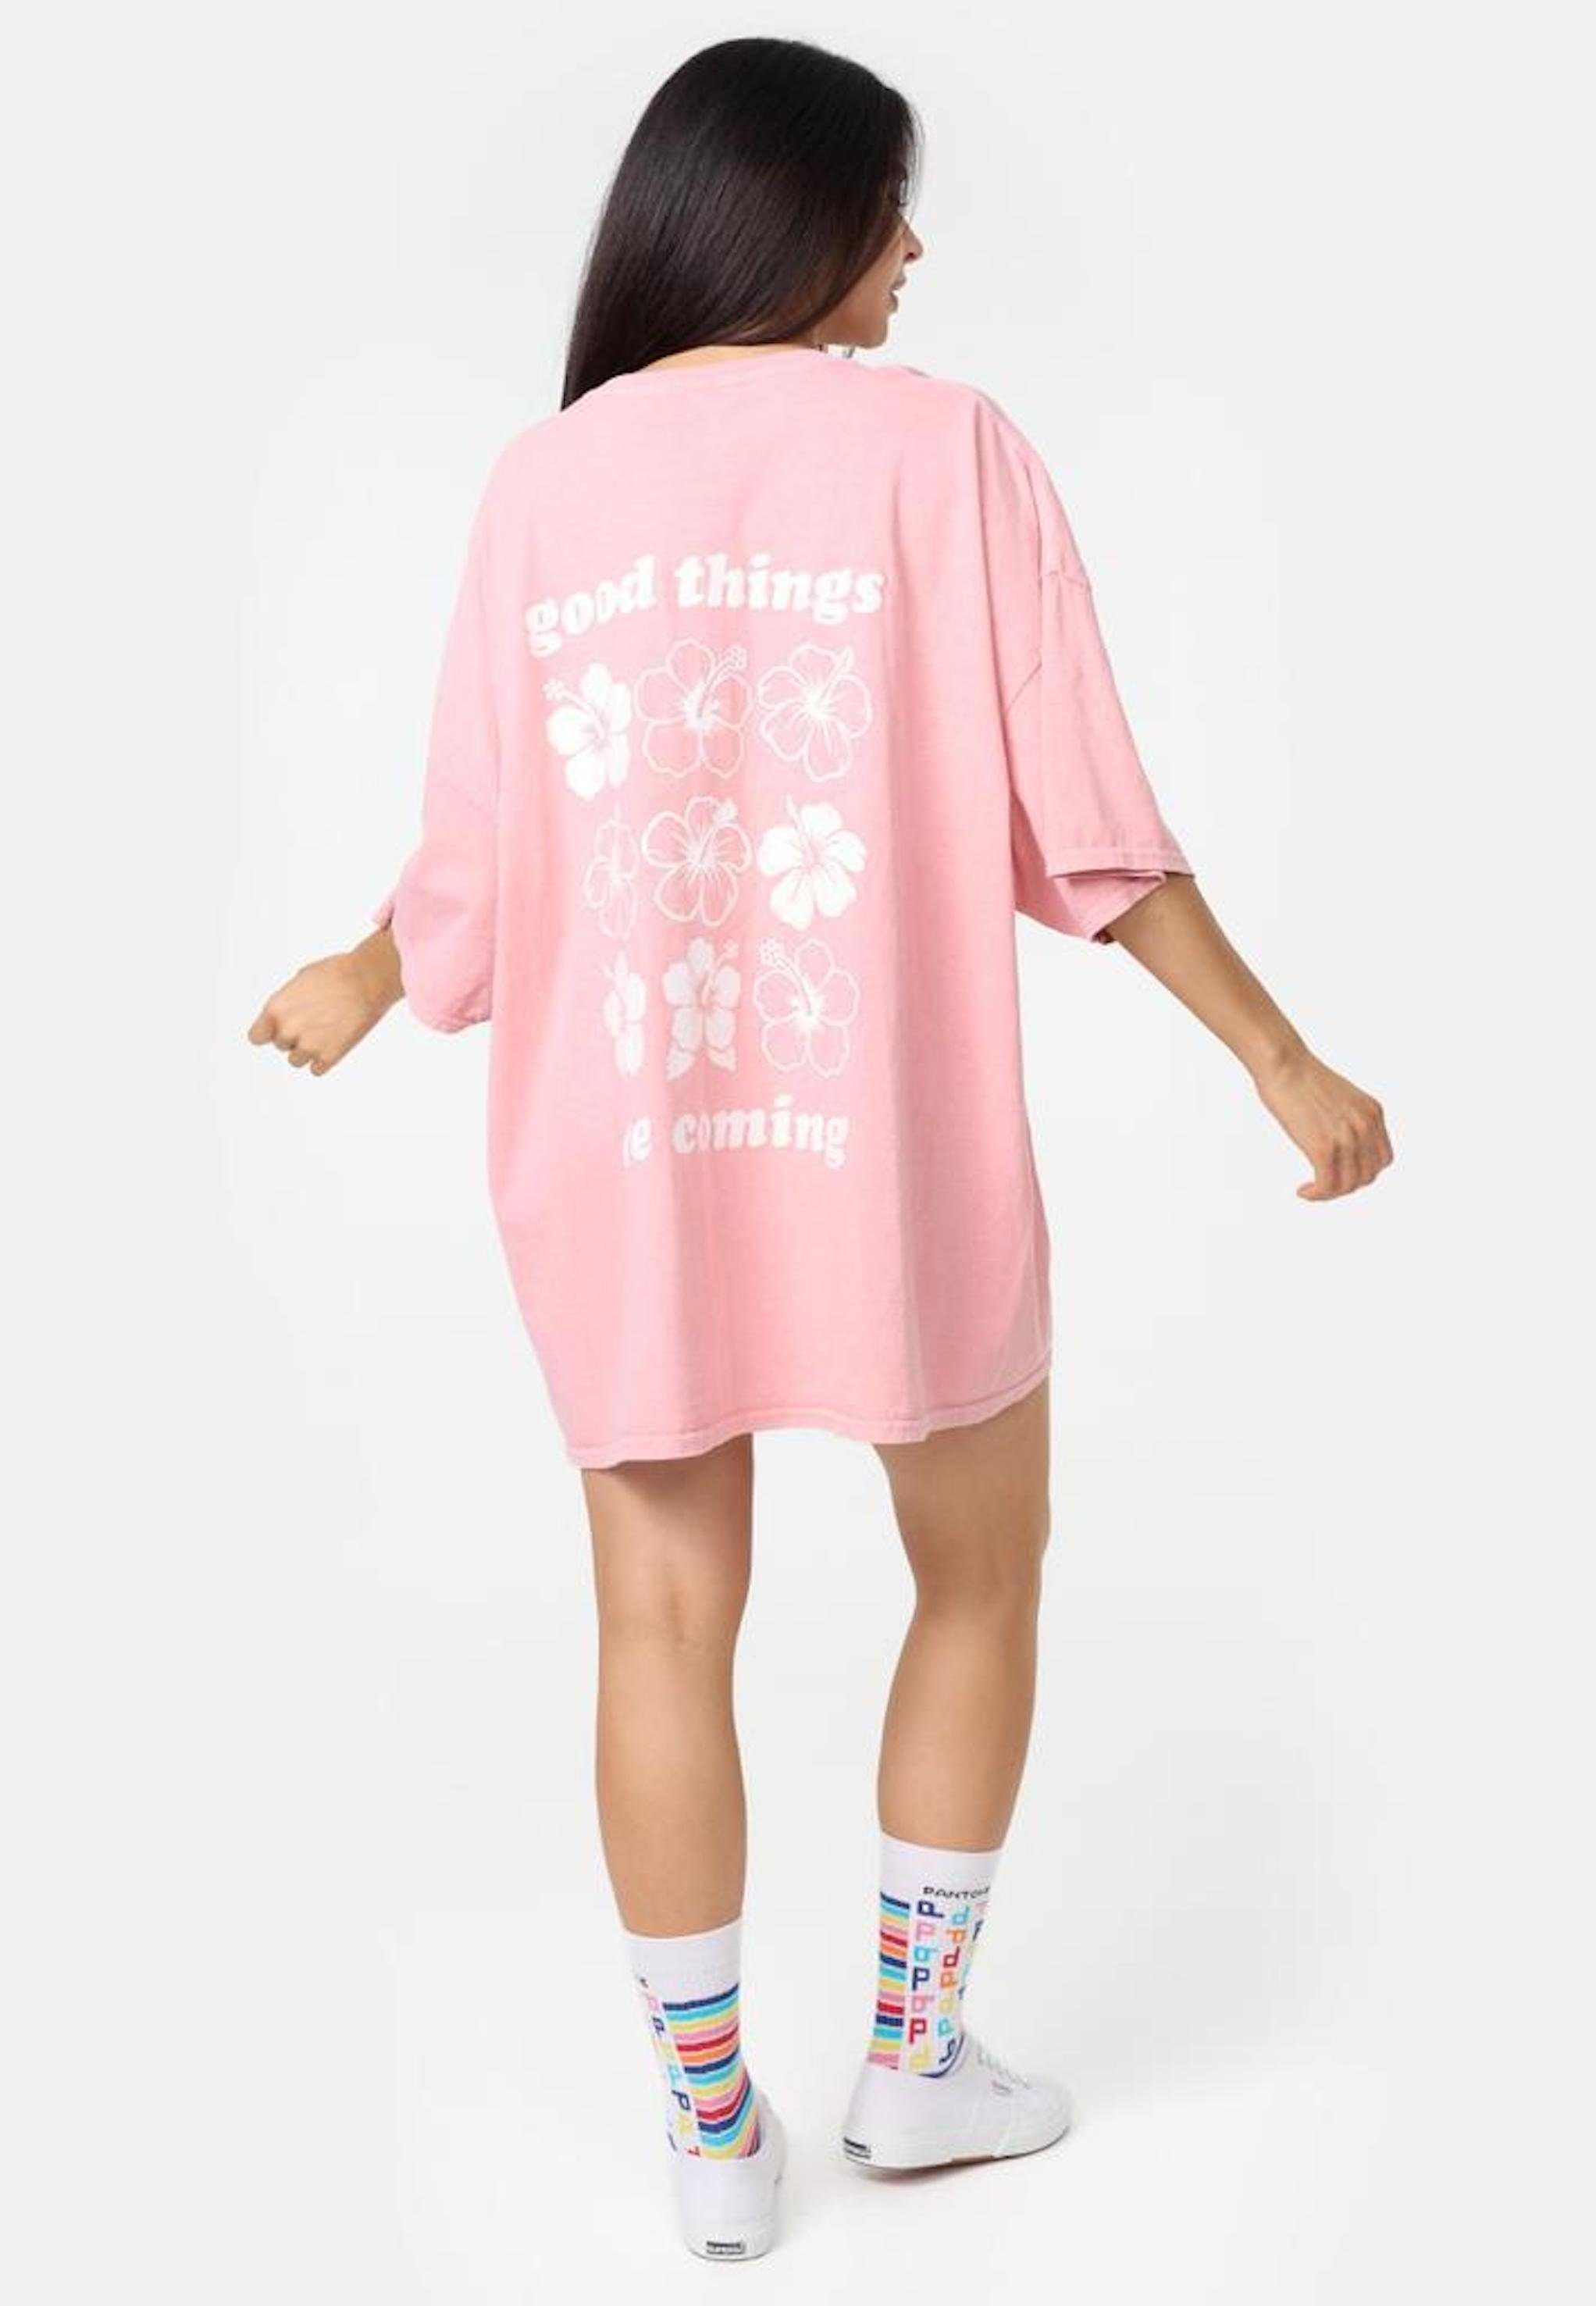 Rosa T-Shirt Sommer Worldclassca Print lang T-Shirt Tee Oberteil Worldclassca Oversized Flower